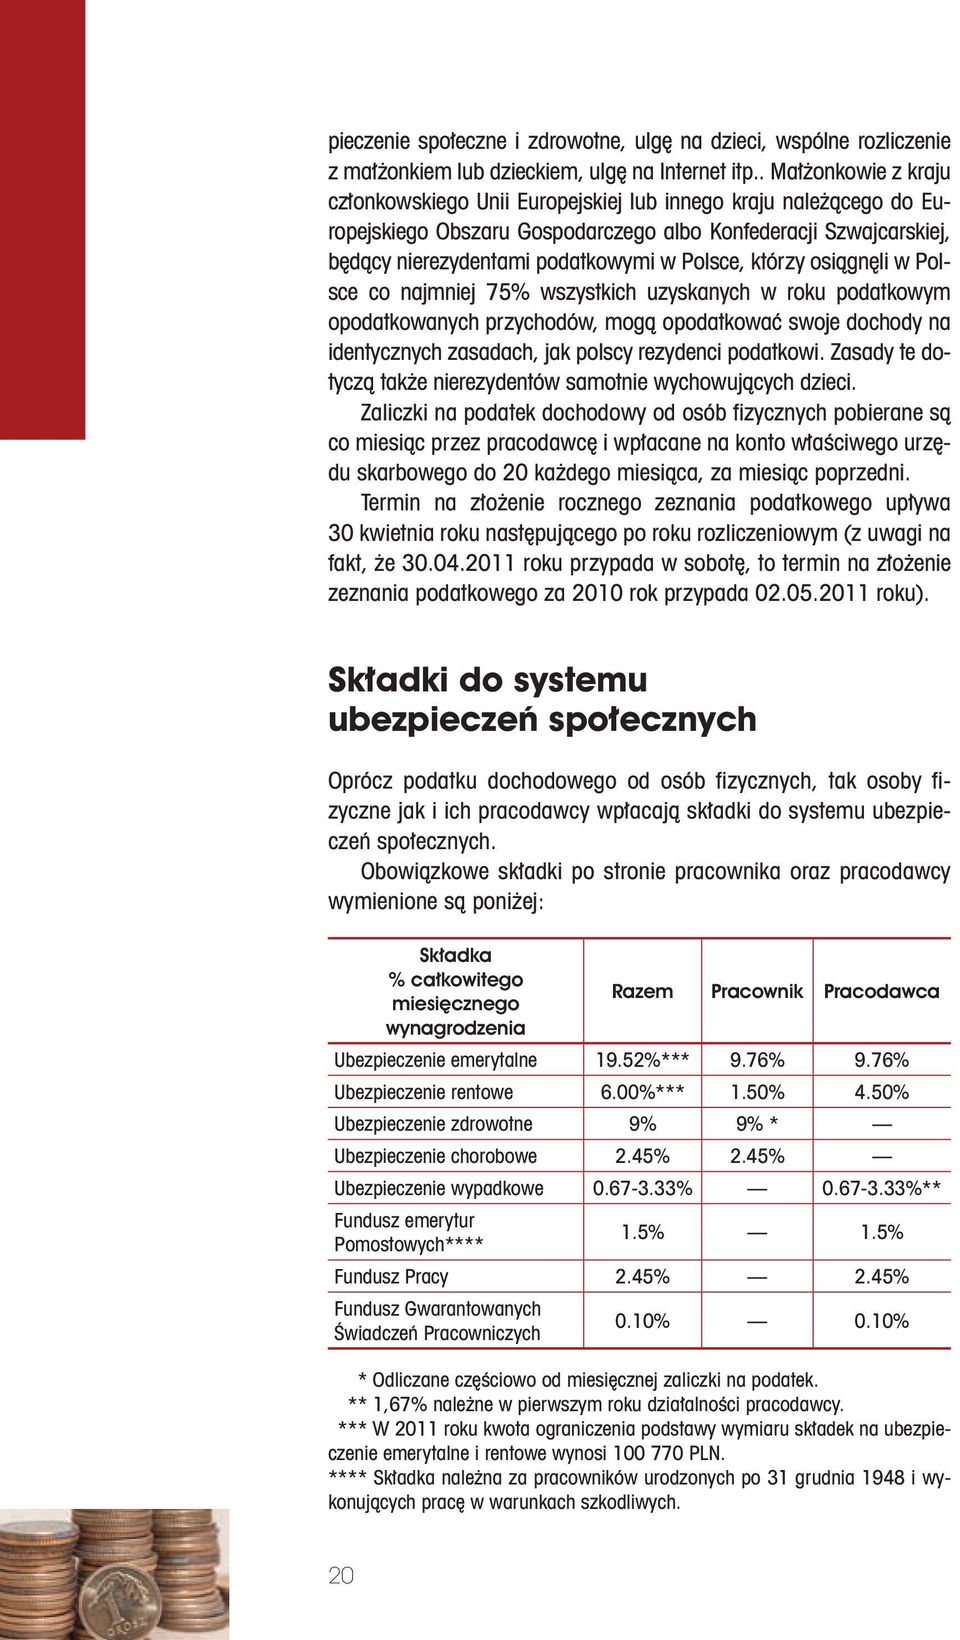 którzy osiągnęli w Polsce co najmniej 75% wszystkich uzyskanych w roku podatkowym opodatkowanych przychodów, mogą opodatkować swoje dochody na identycznych zasadach, jak polscy rezydenci podatkowi.